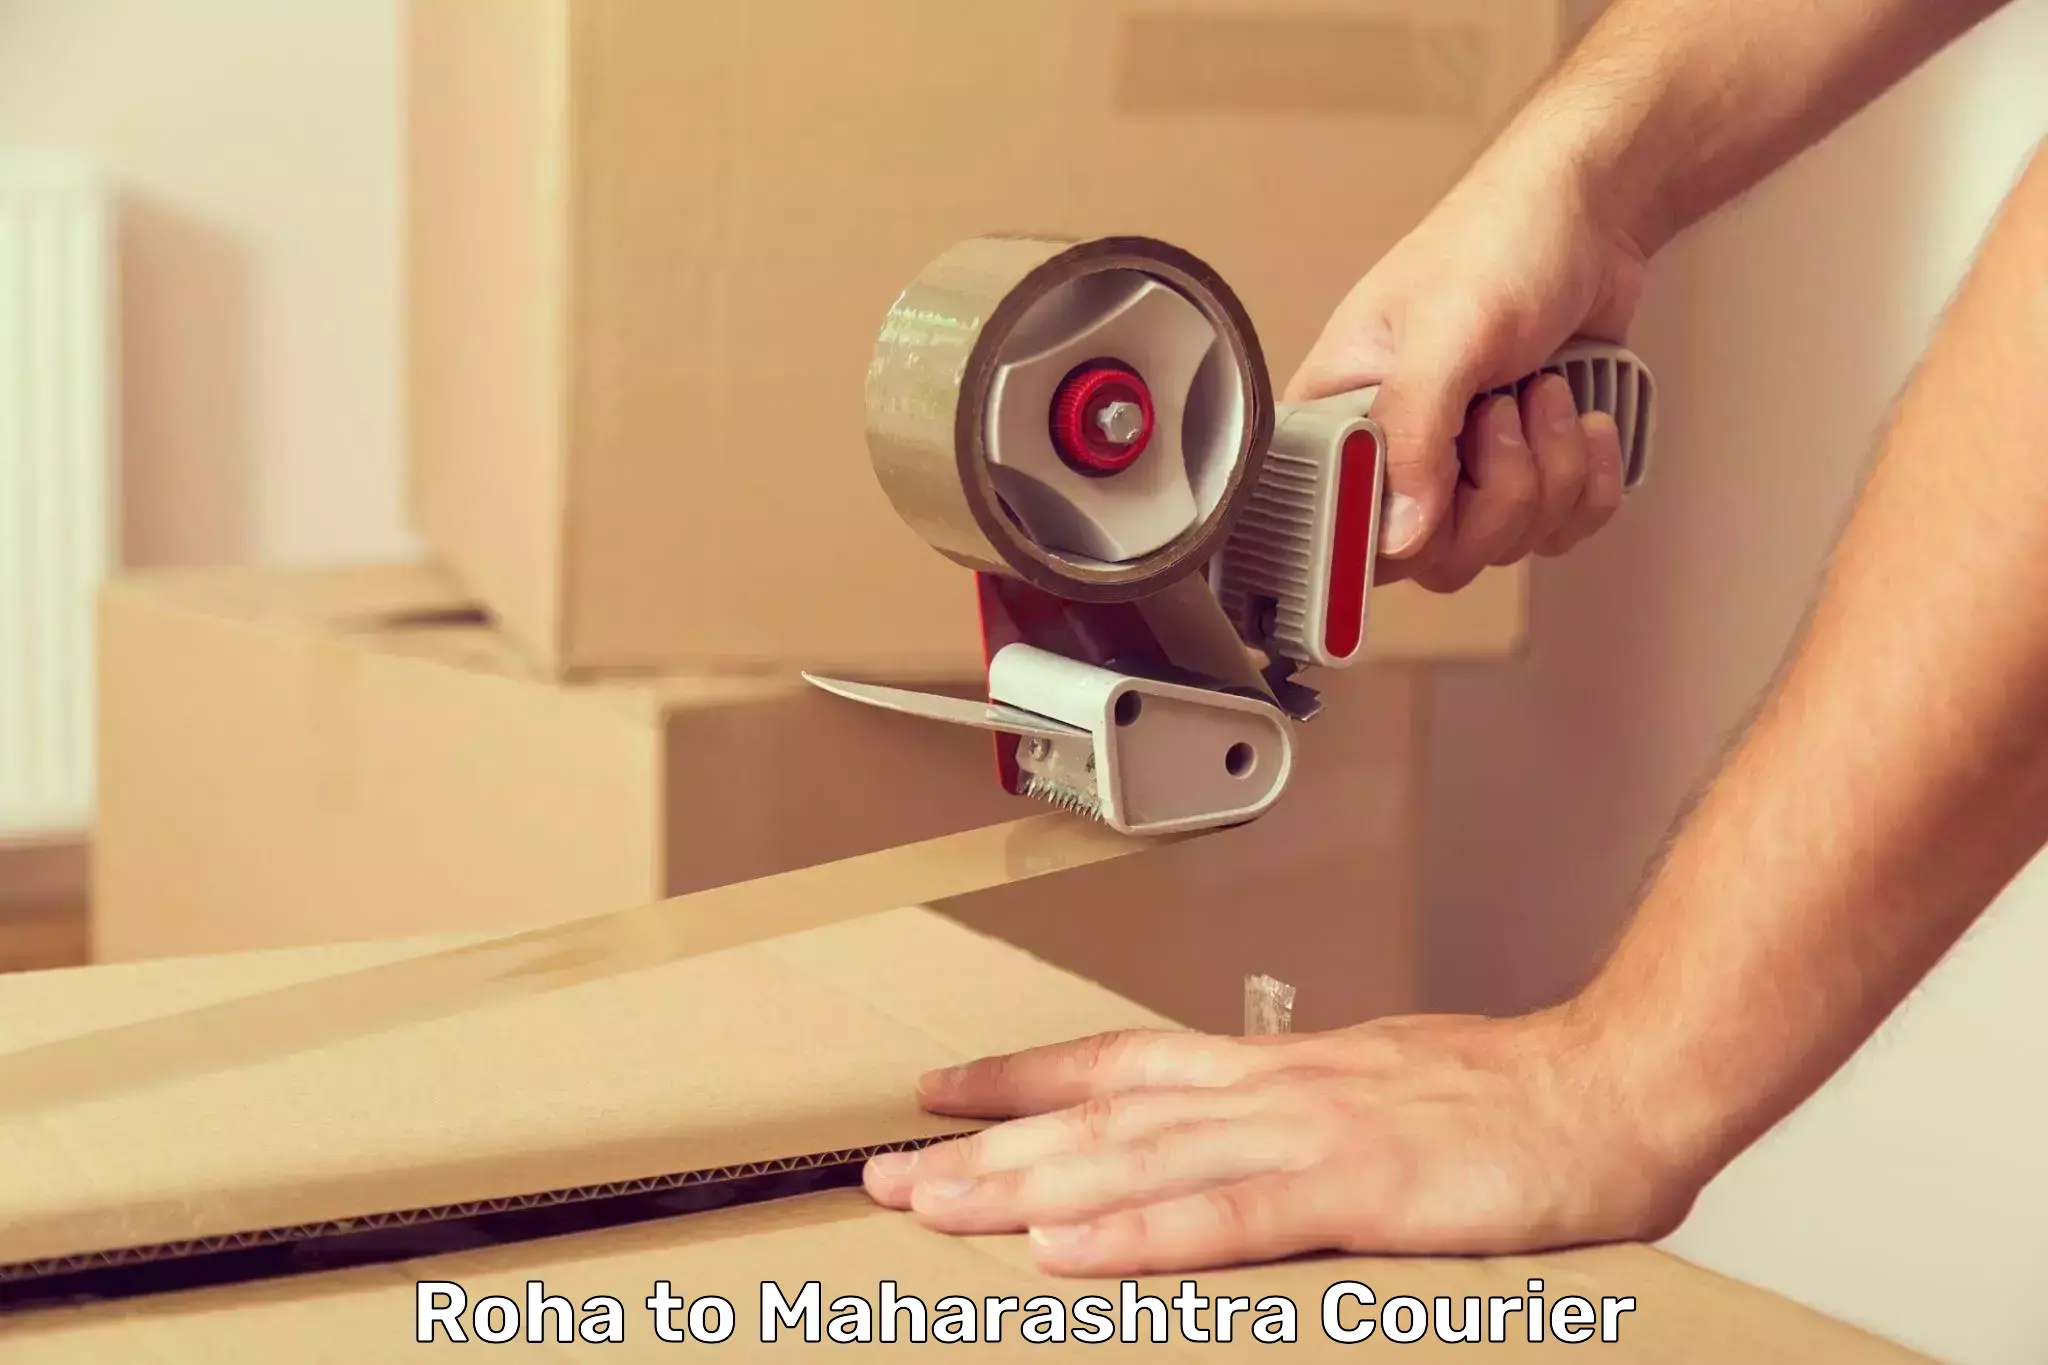 Online shipping calculator Roha to Maharashtra